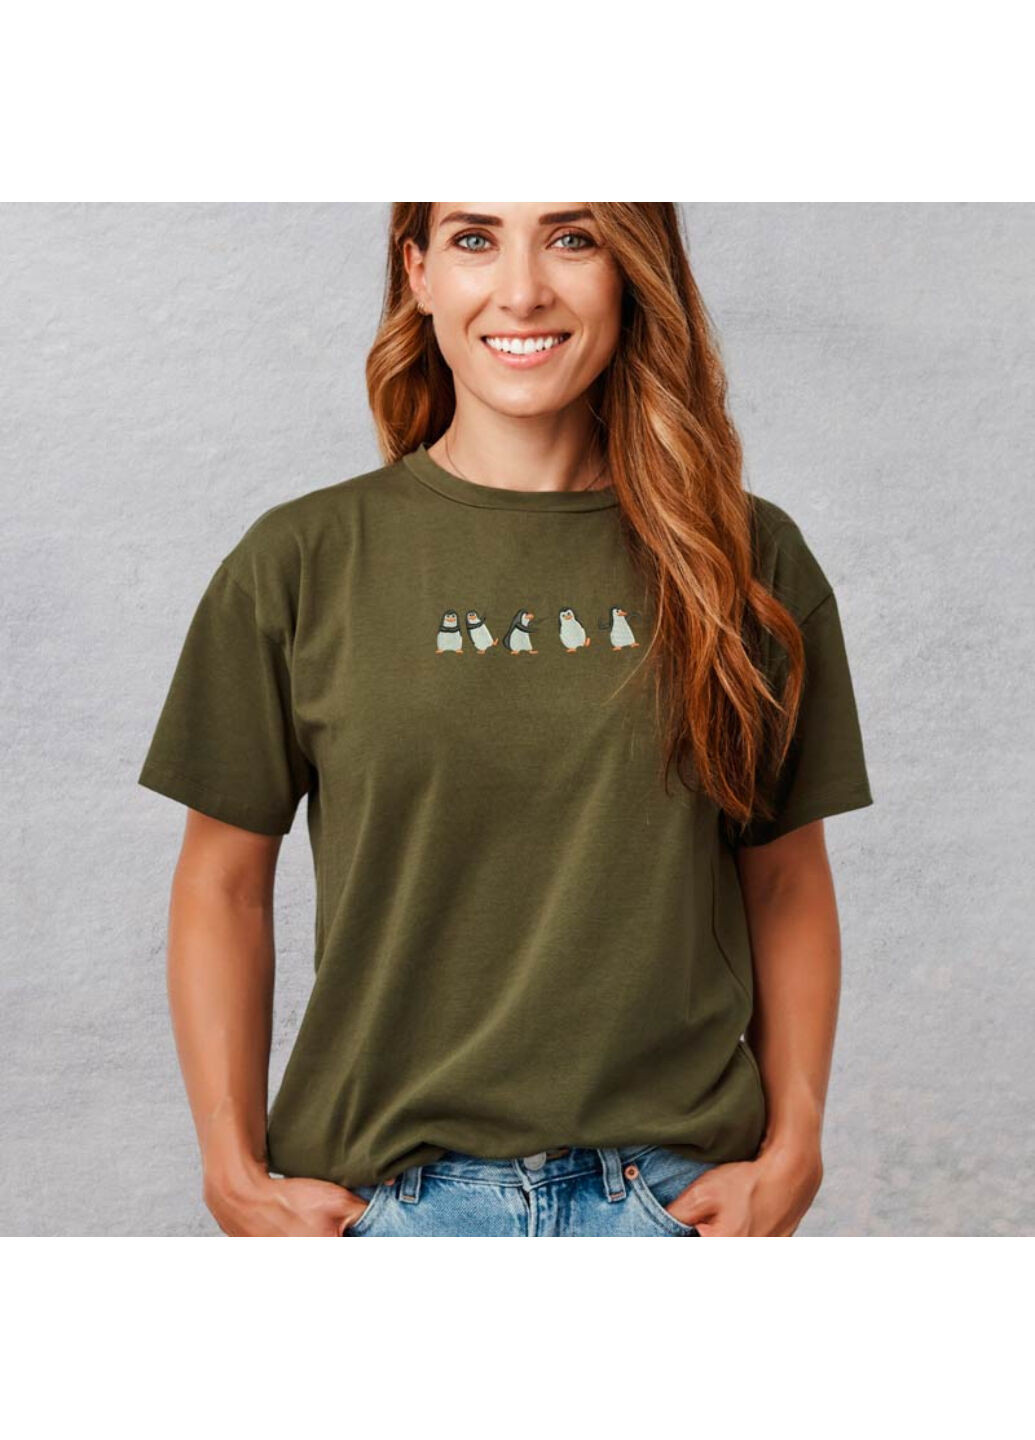 Хаки (оливковая) футболка с вышивкой пингвинов 02-5 женская хаки l No Brand